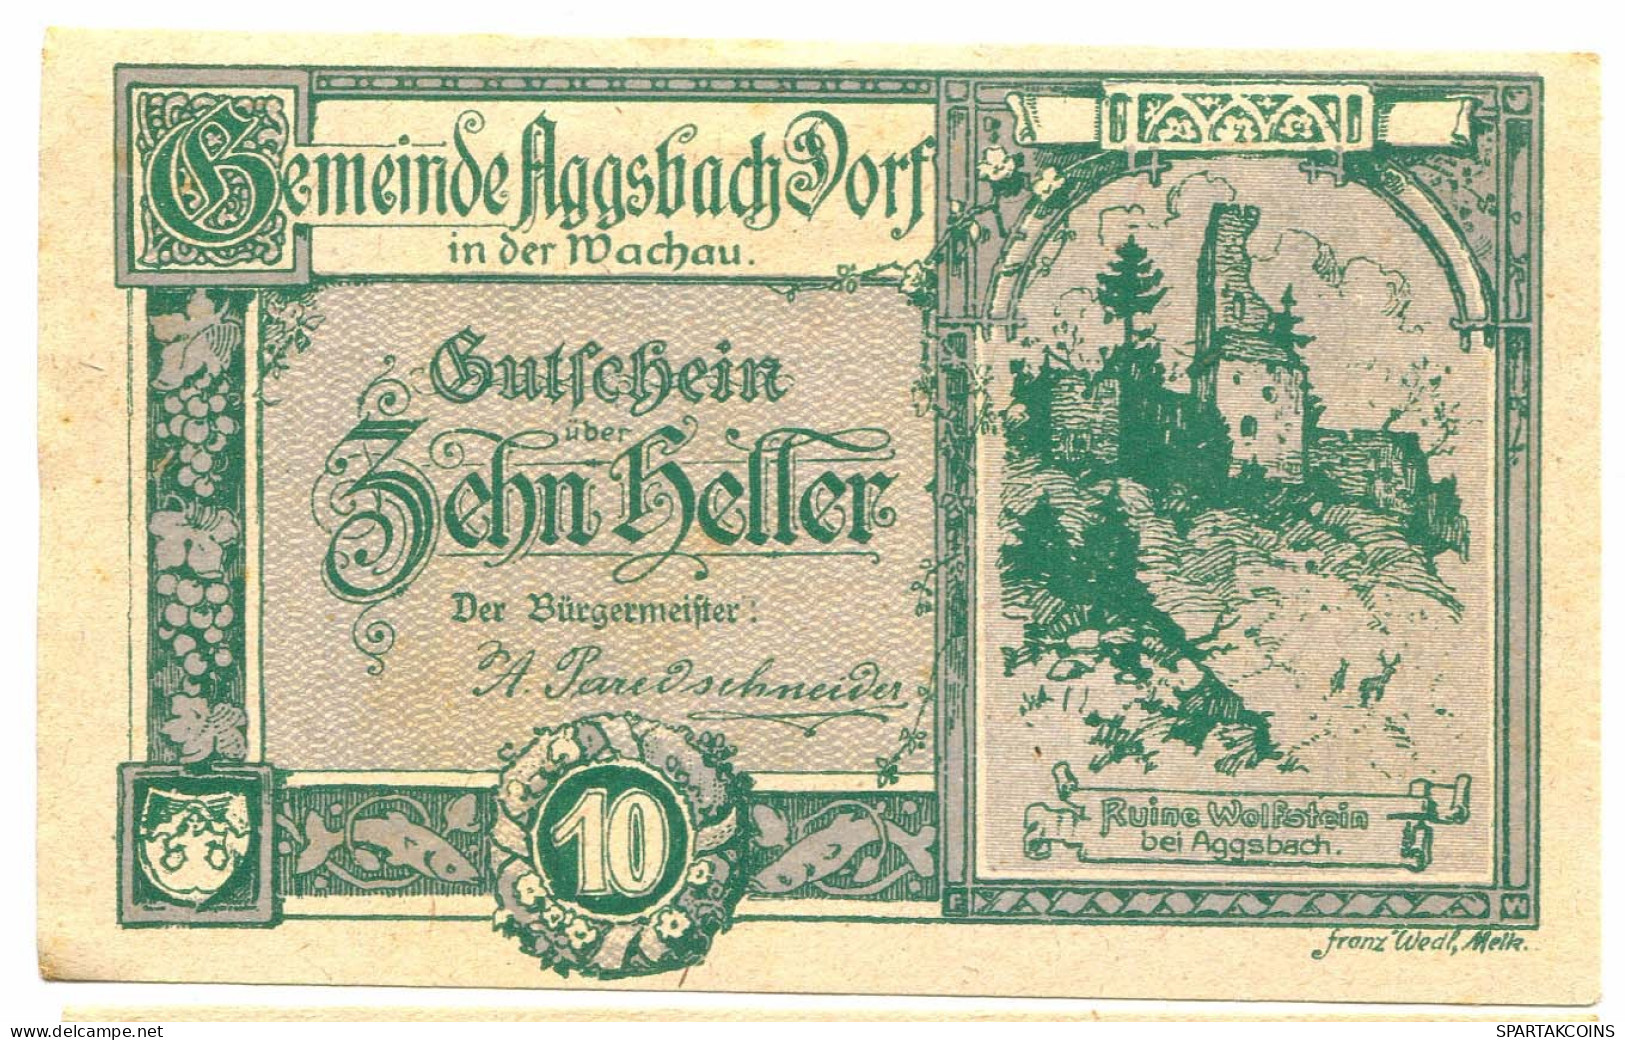 10 Heller 1920 AGGSBACH DORF Österreich UNC Notgeld Papiergeld Banknote #P10355 - [11] Local Banknote Issues